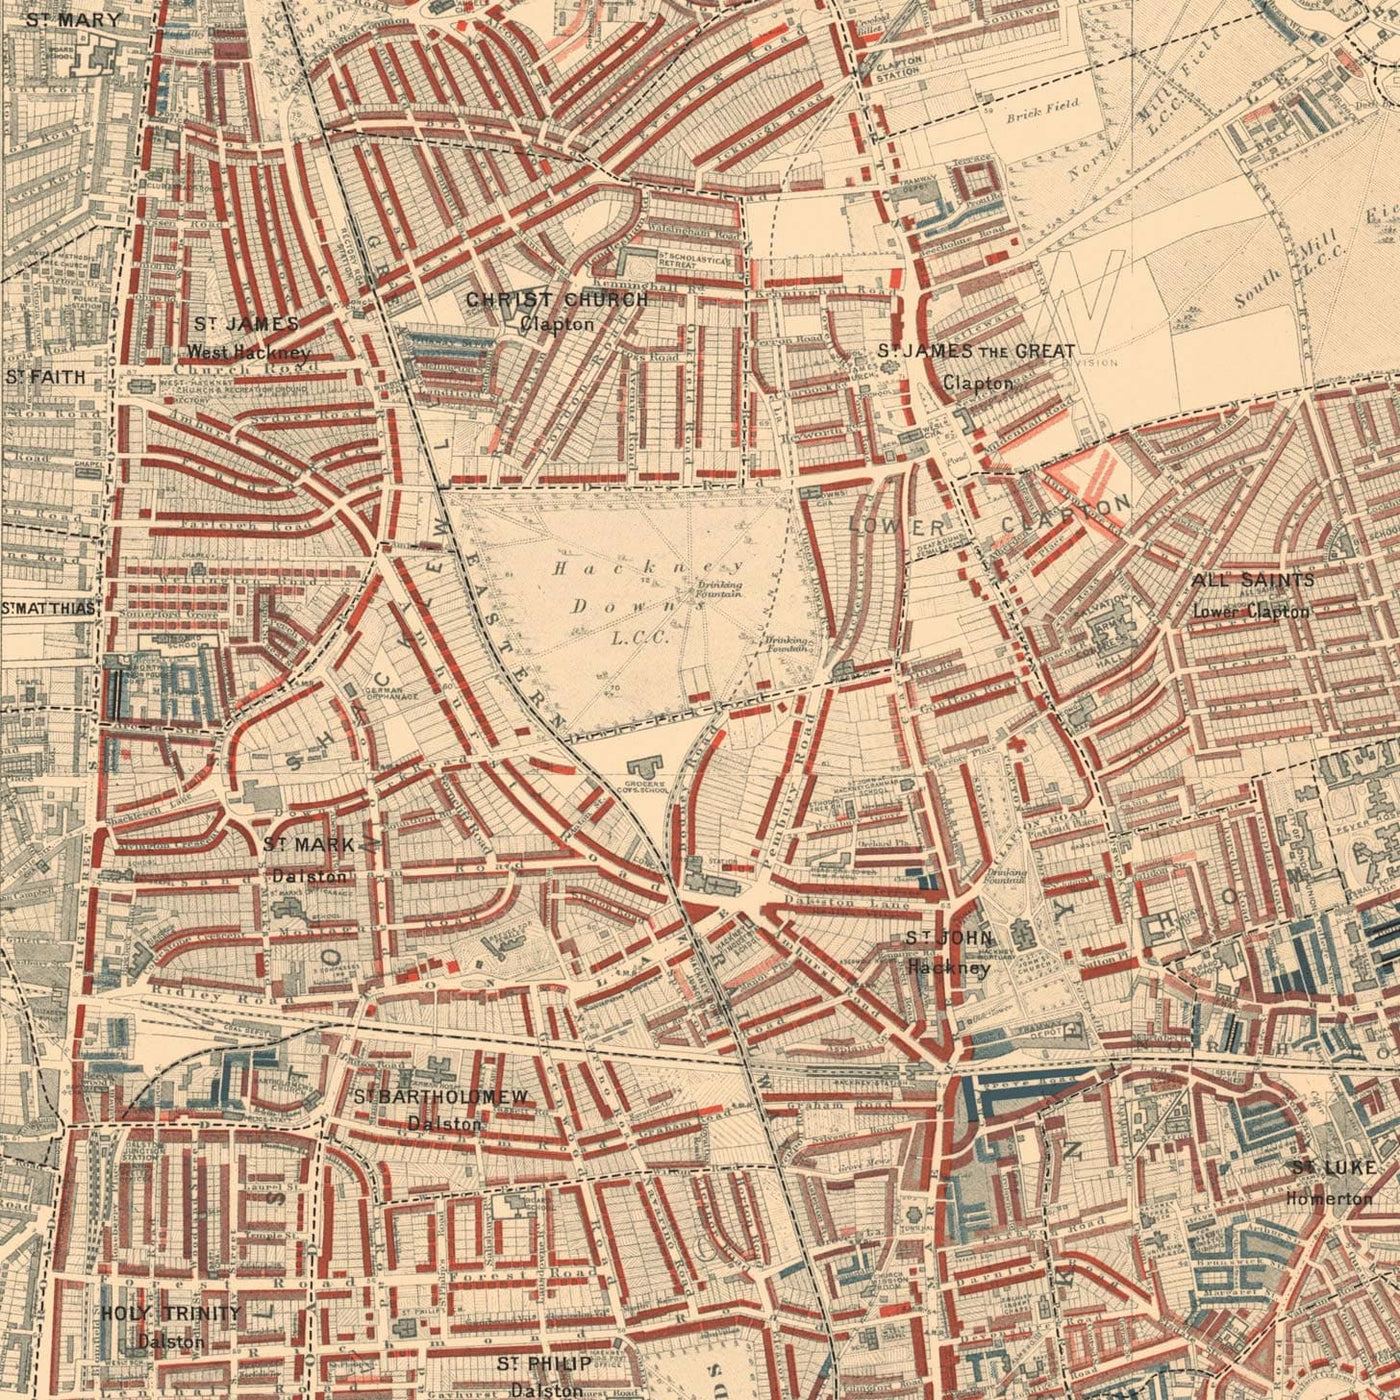 Mapa de la pobreza en Londres 1898-9, Distrito Noreste, por Charles Booth - Hackney, London Fields, Clapton, Marshes - E5, E8, E9, E3, N16